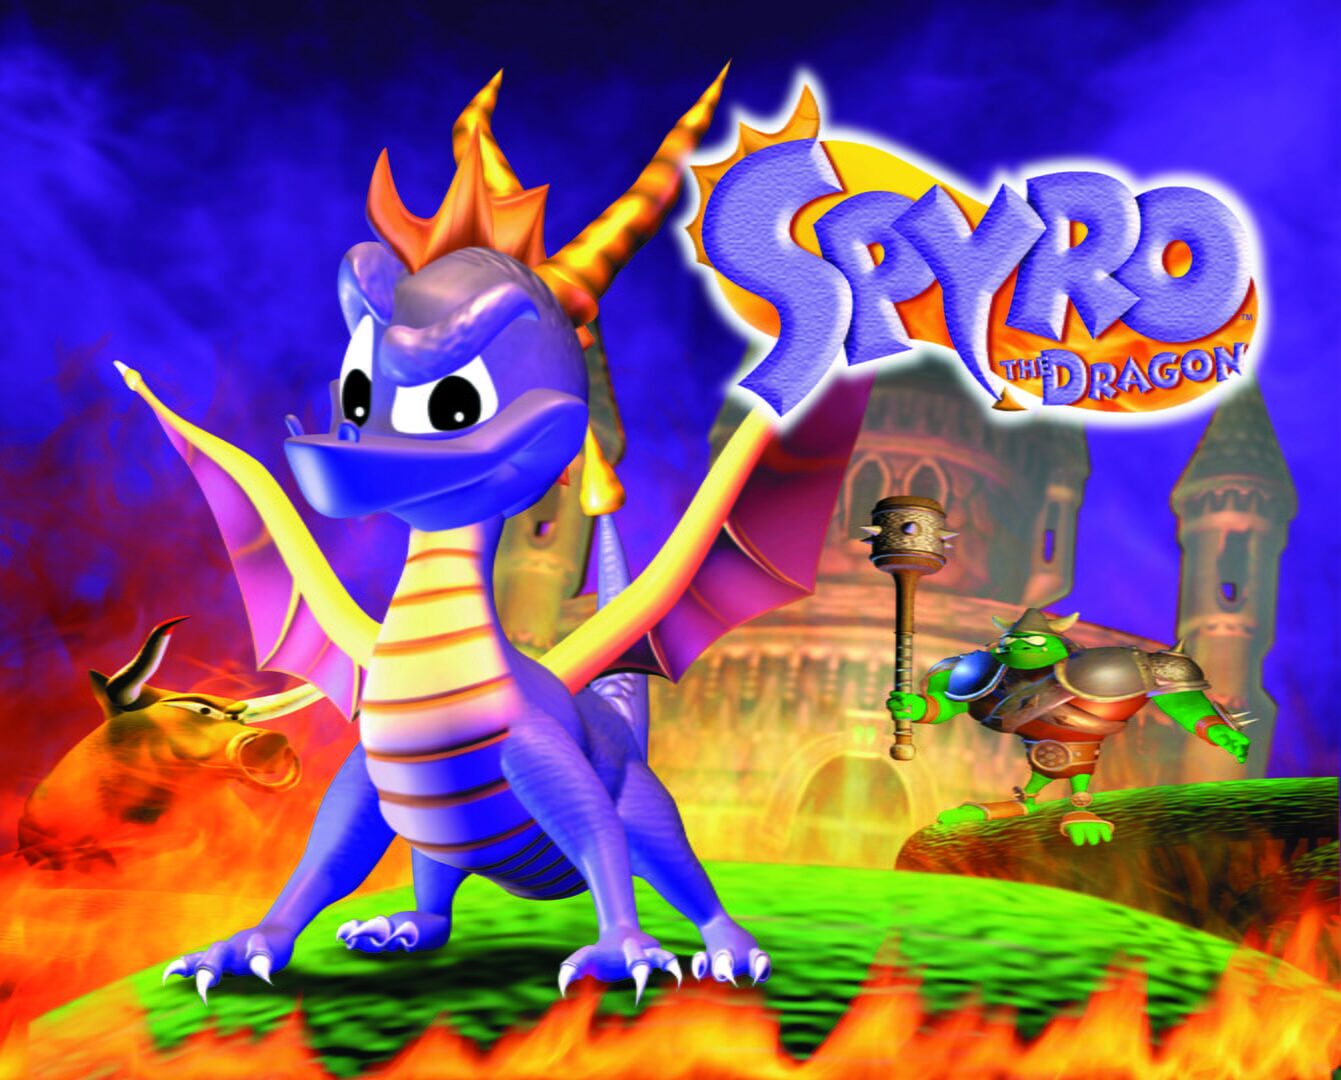 Arte - Spyro the Dragon